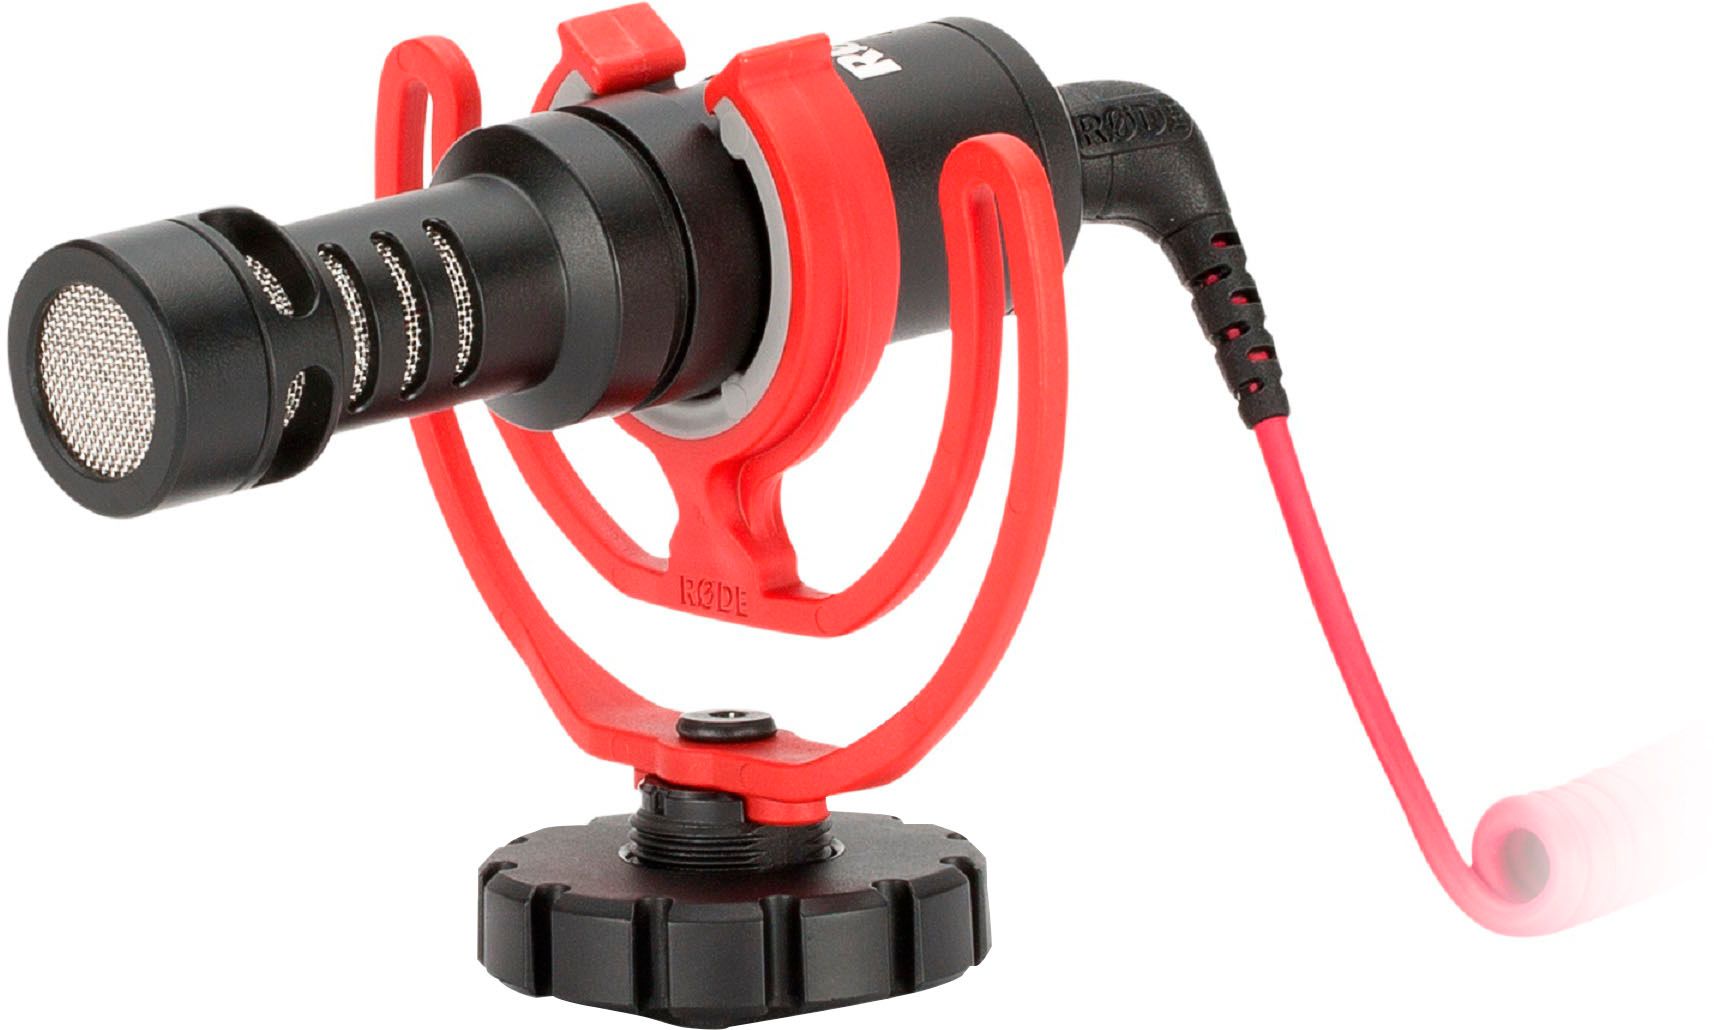 RØDE VIDEOMICRO Compact On-Camera Microphone VMICRO - Best Buy | Best Buy U.S.